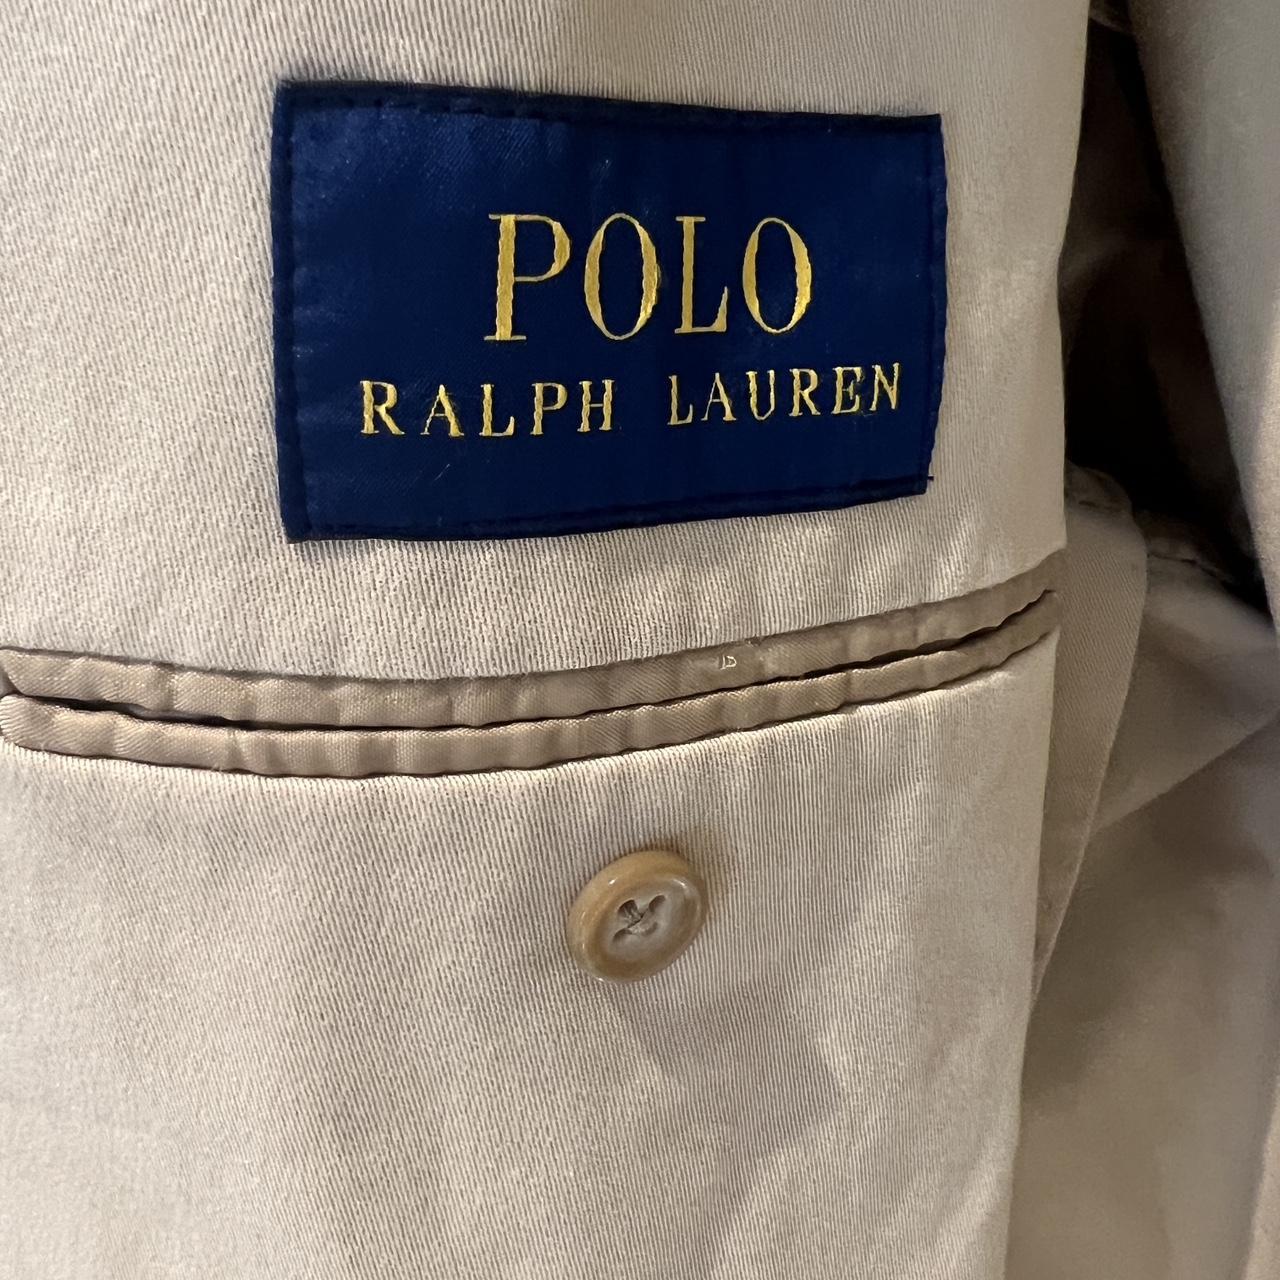 Polo Ralph Lauren Men's Tan and Cream Jacket | Depop